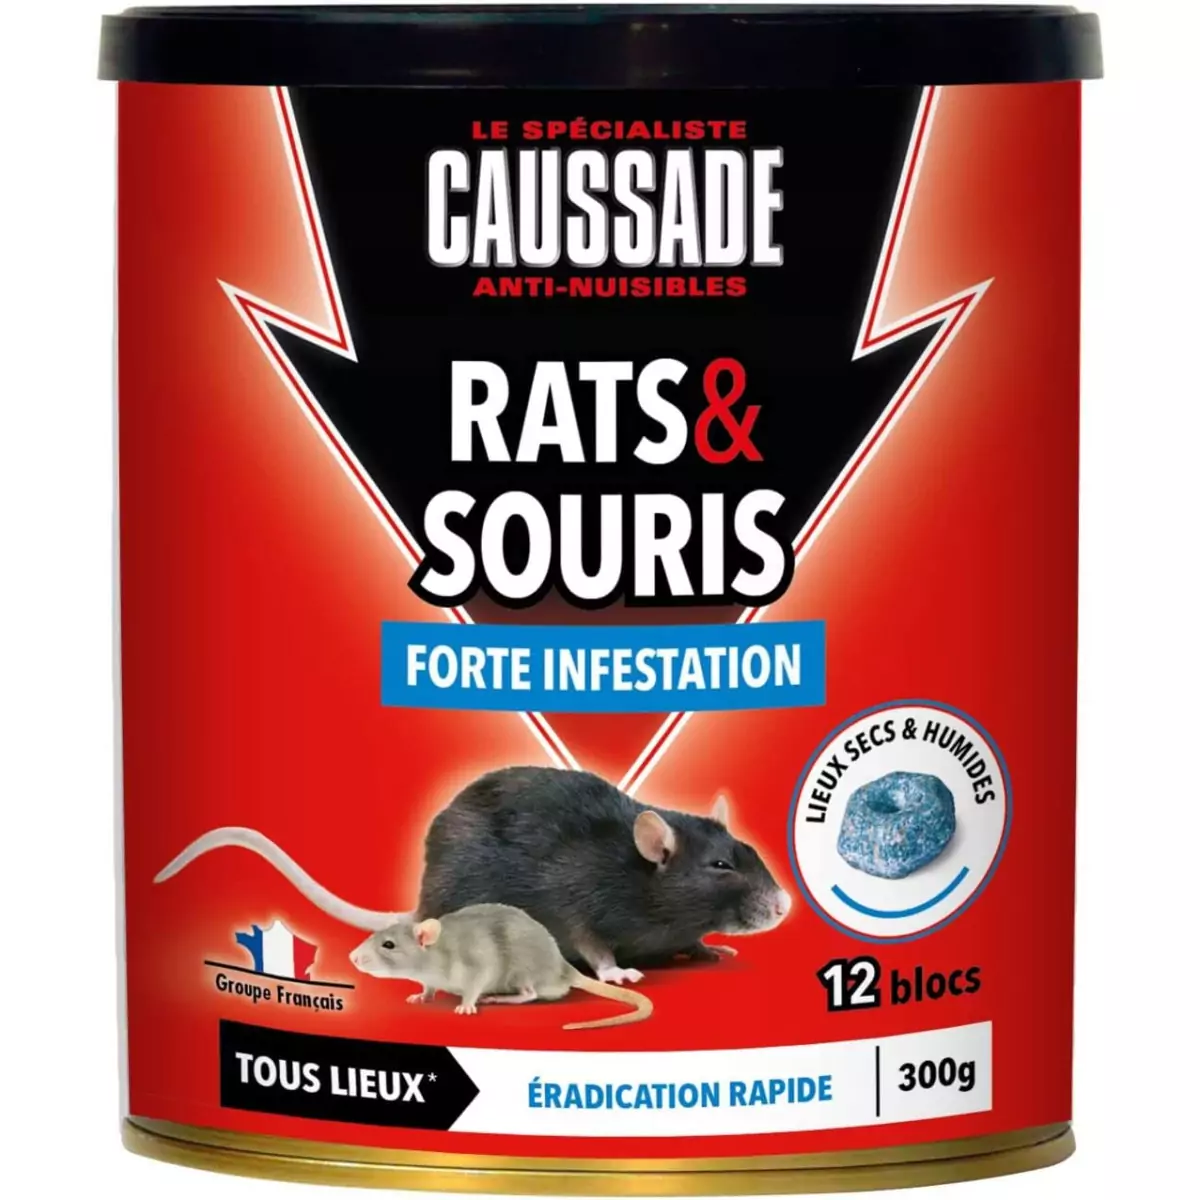 Anti-nuisibles, rat, souris, insecte 